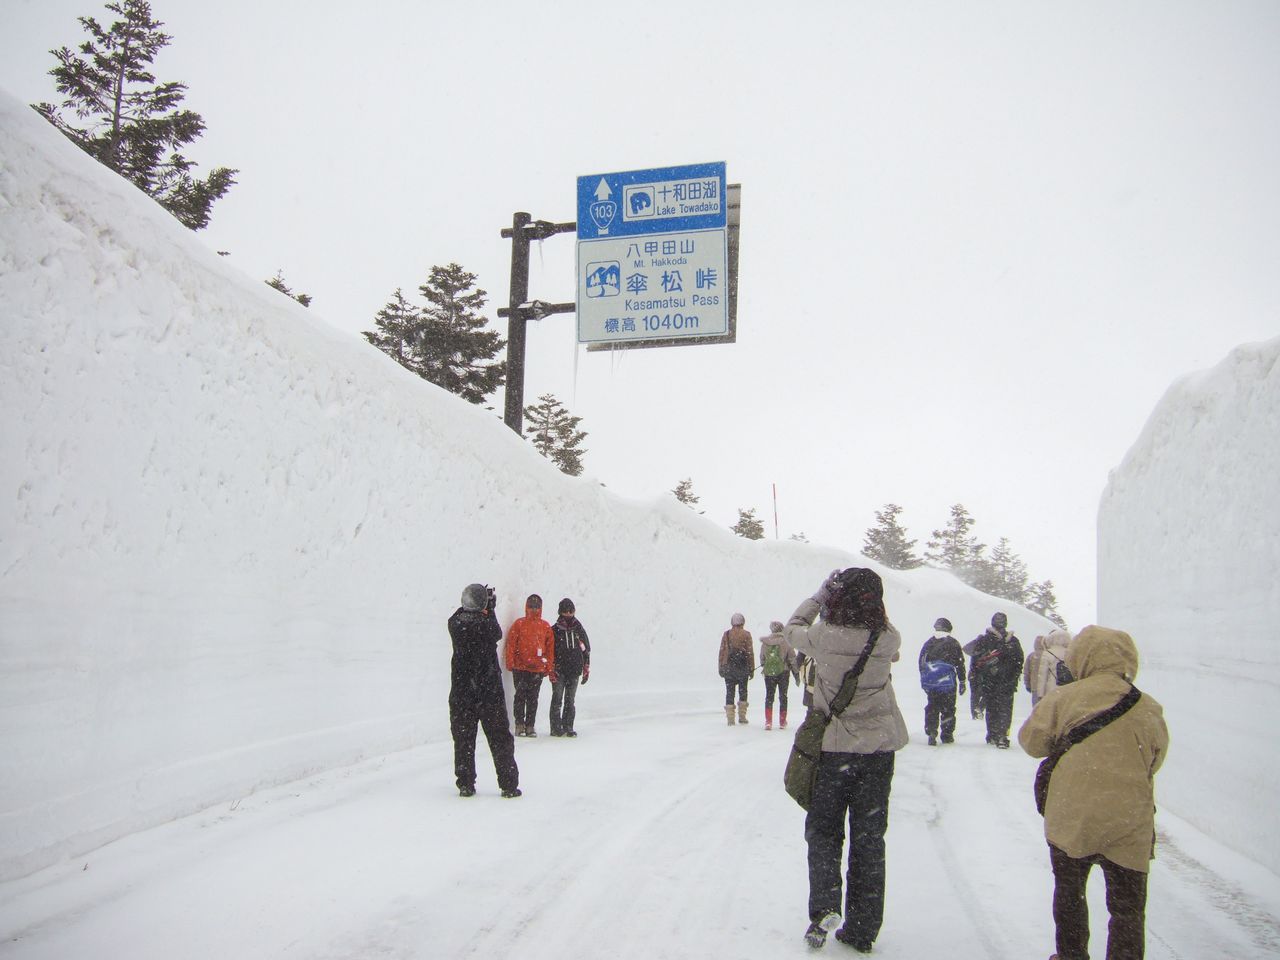 Le couloir de neige, ouvert en avant-première uniquement pour les piétons les 30 et 31 mars 2019. (Photo avec l’aimable autorisation de la fédération des offices de tourisme de la préfecture d’Aomori)